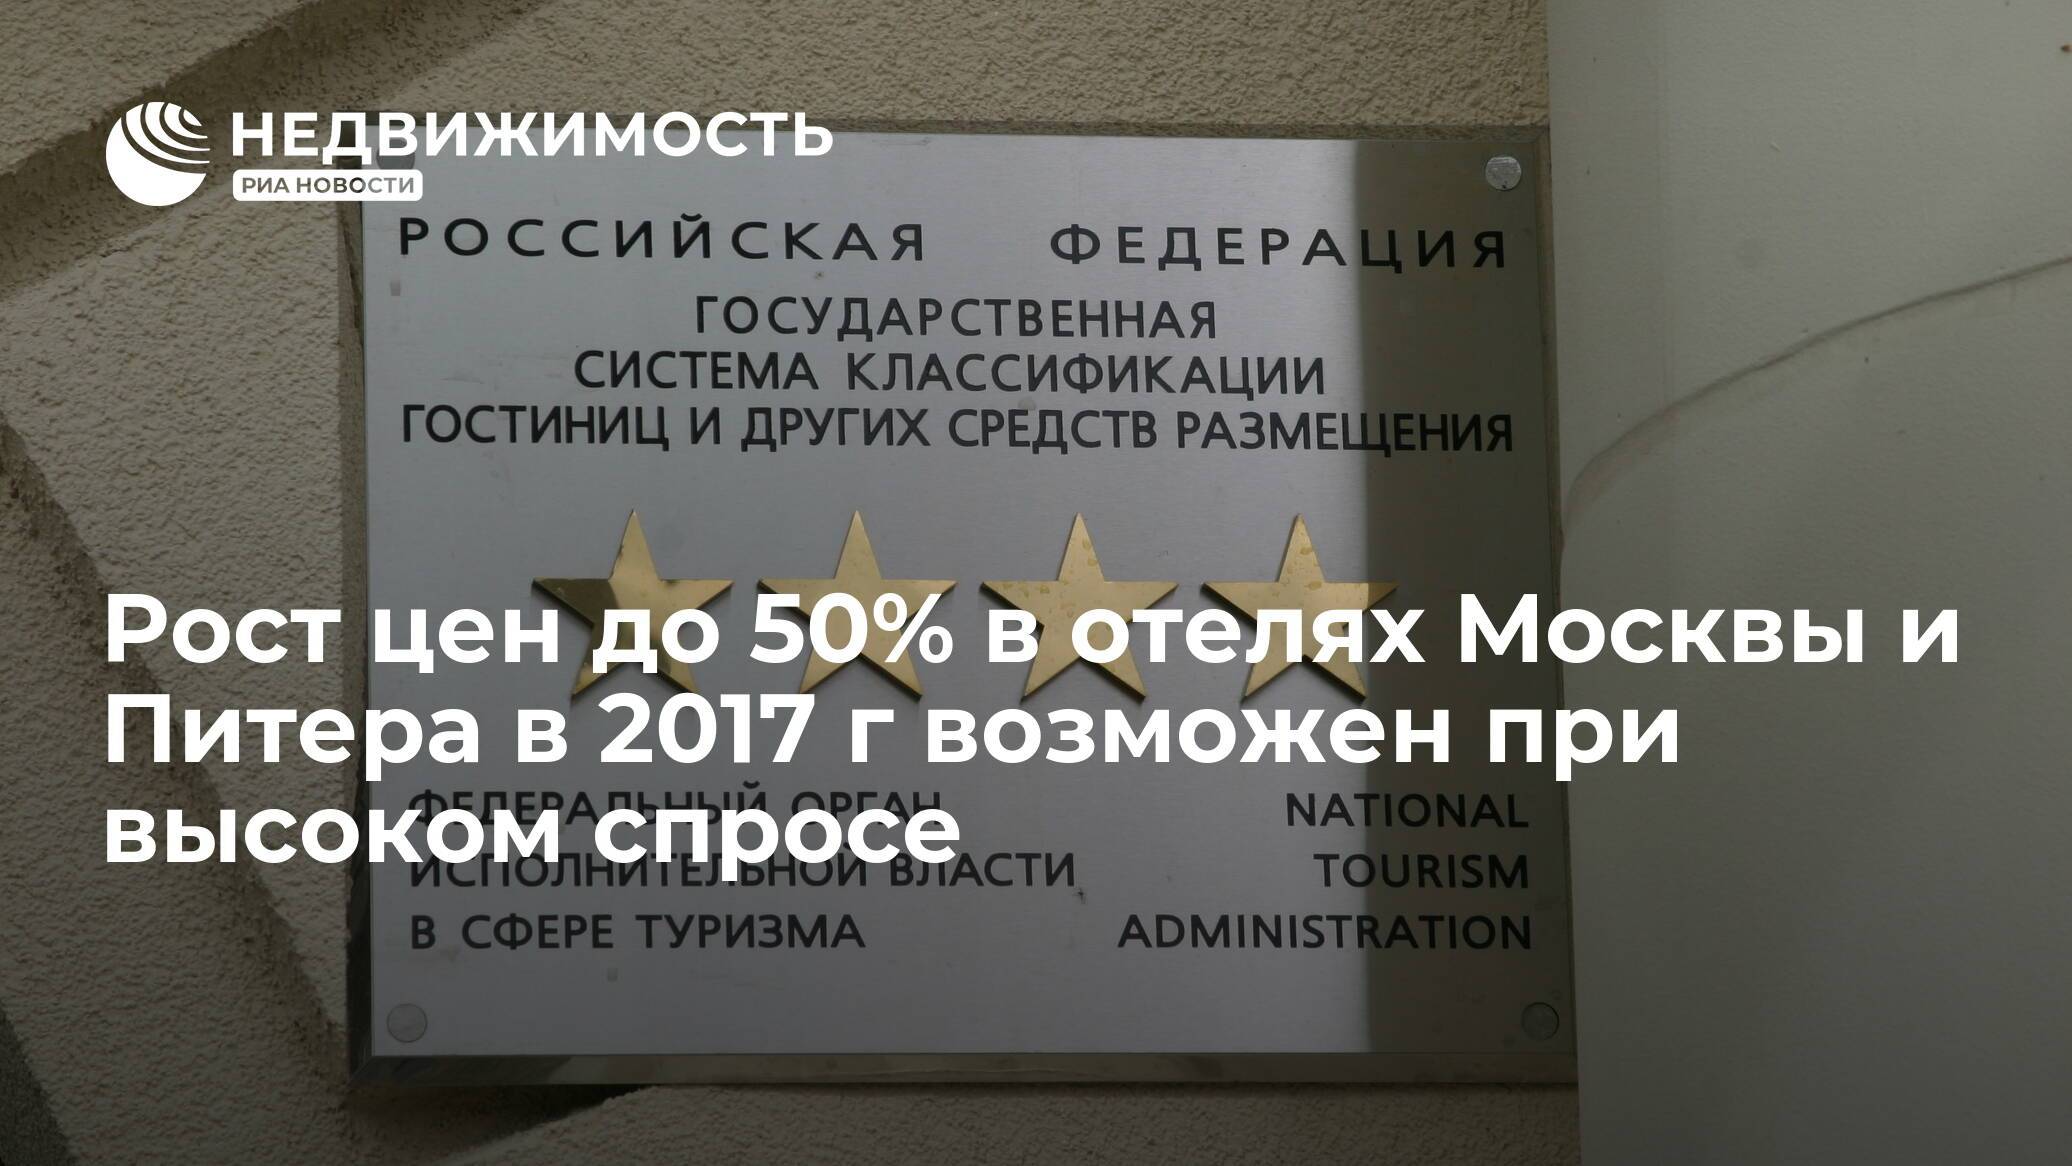 Плюсы внутреннего туризма: отели петербурга резко увеличили загрузку благодаря москвичам | «узнай, страна!»